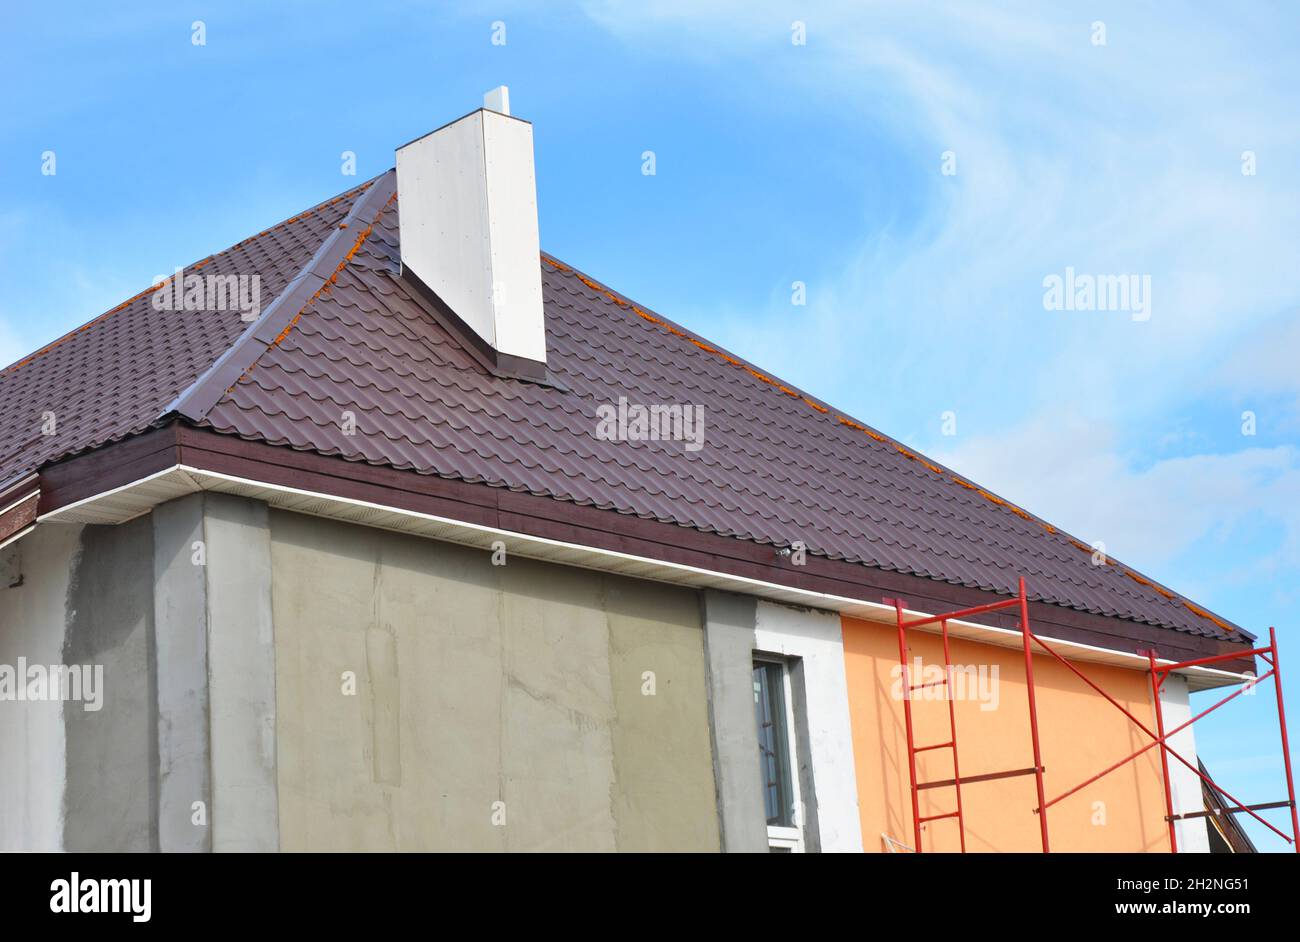 Dachkonstruktion aus Metall mit Kamininstallation, Stuck, Verputzen und Bemalung der Hauswand. Metalldächer Konstruktion mit Kunststoff-Soffits. Stockfoto